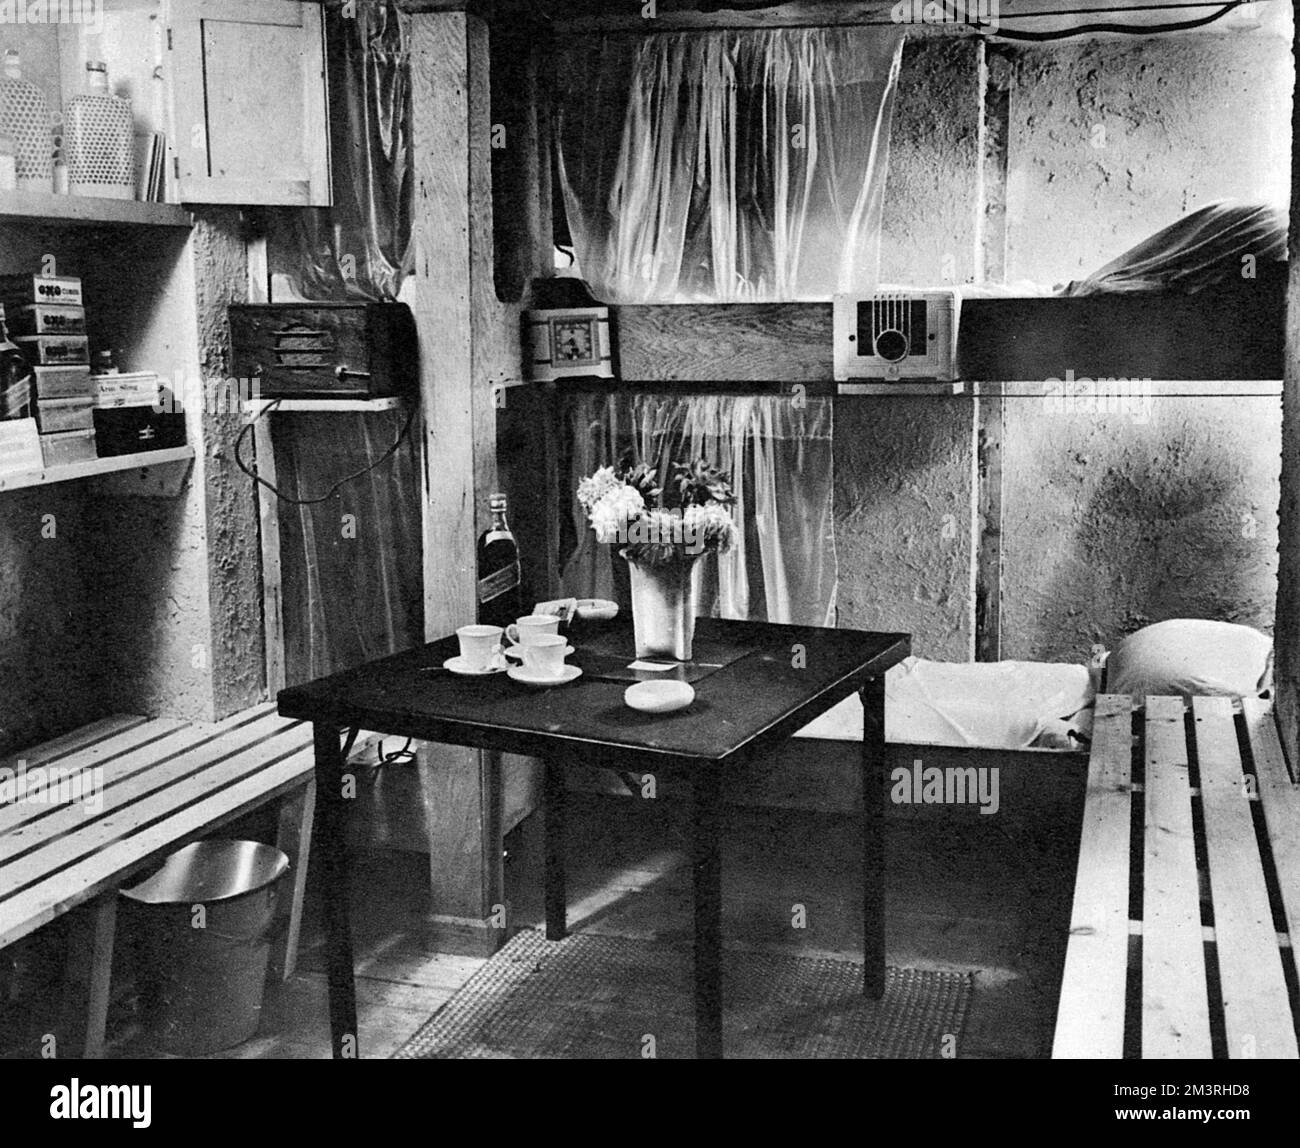 Un lussuoso shelter Air raid, dotato di una varietà di comfort materiali, tra cui un set wireless per fornire la musica che sarebbe, "a casa in tempi di stress". Data: 1939 Foto Stock